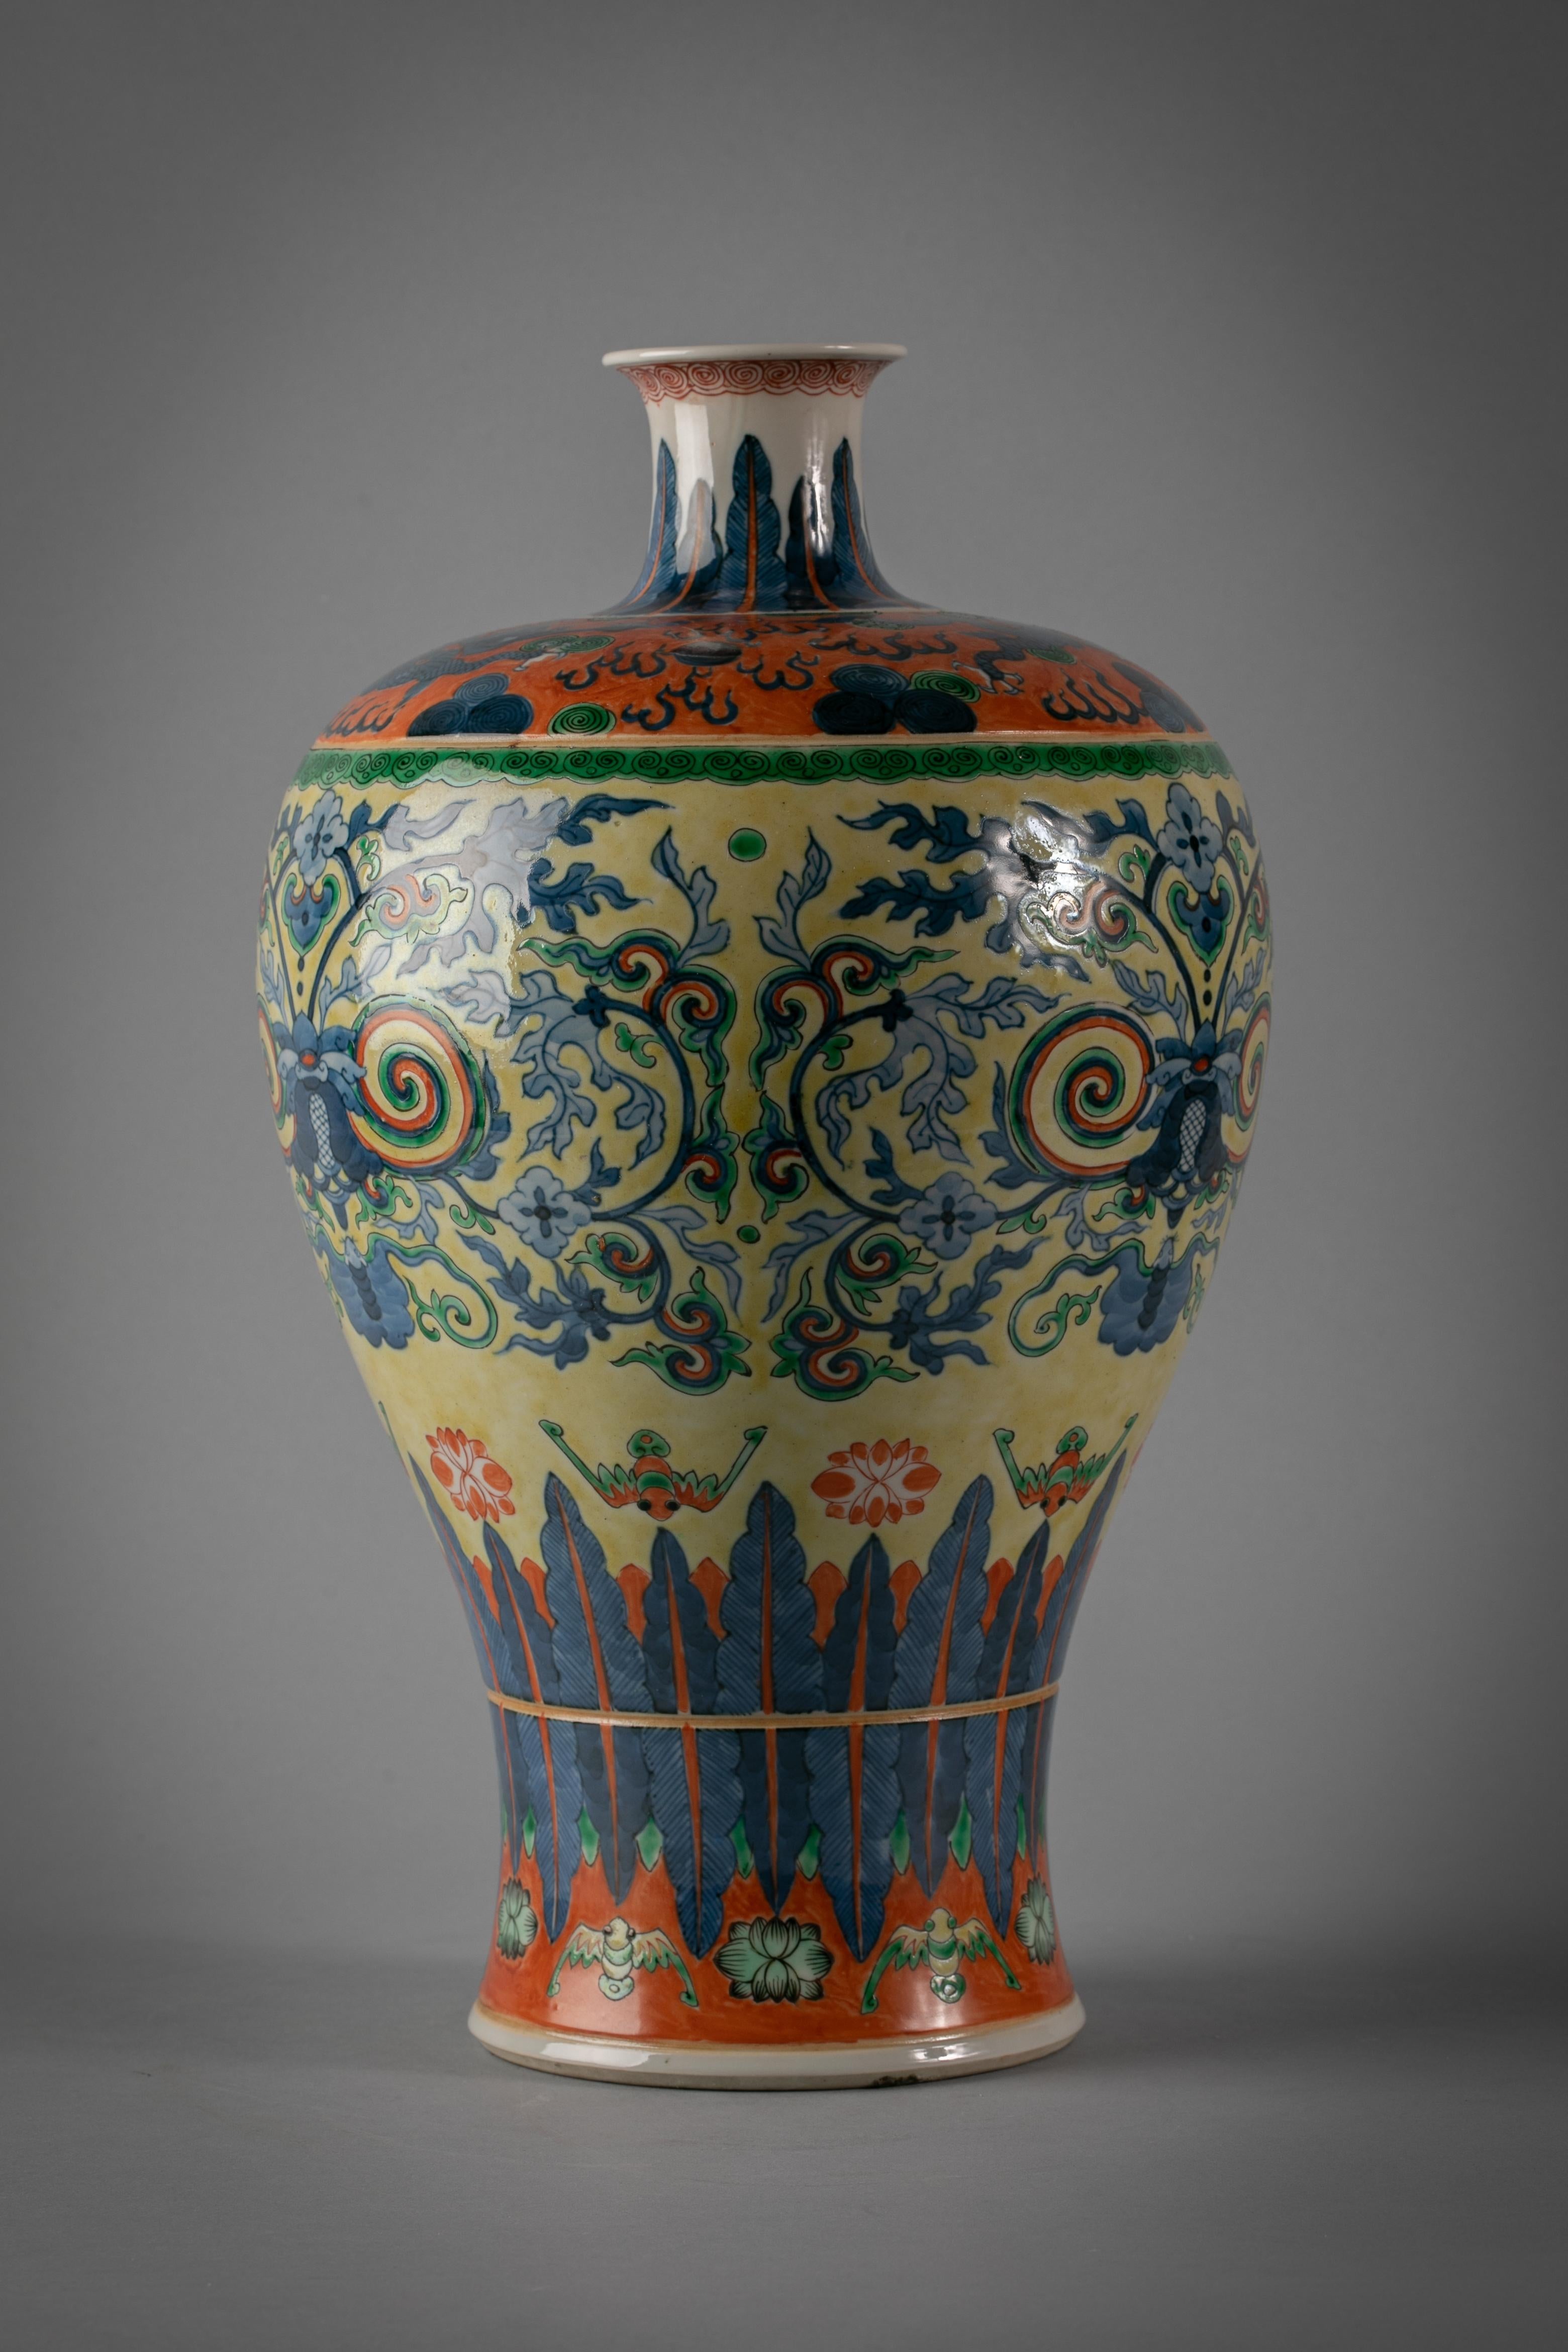 Wahrscheinlich eine blau-weiße chinesische Vase mit einigen nachträglich hinzugefügten Farben.